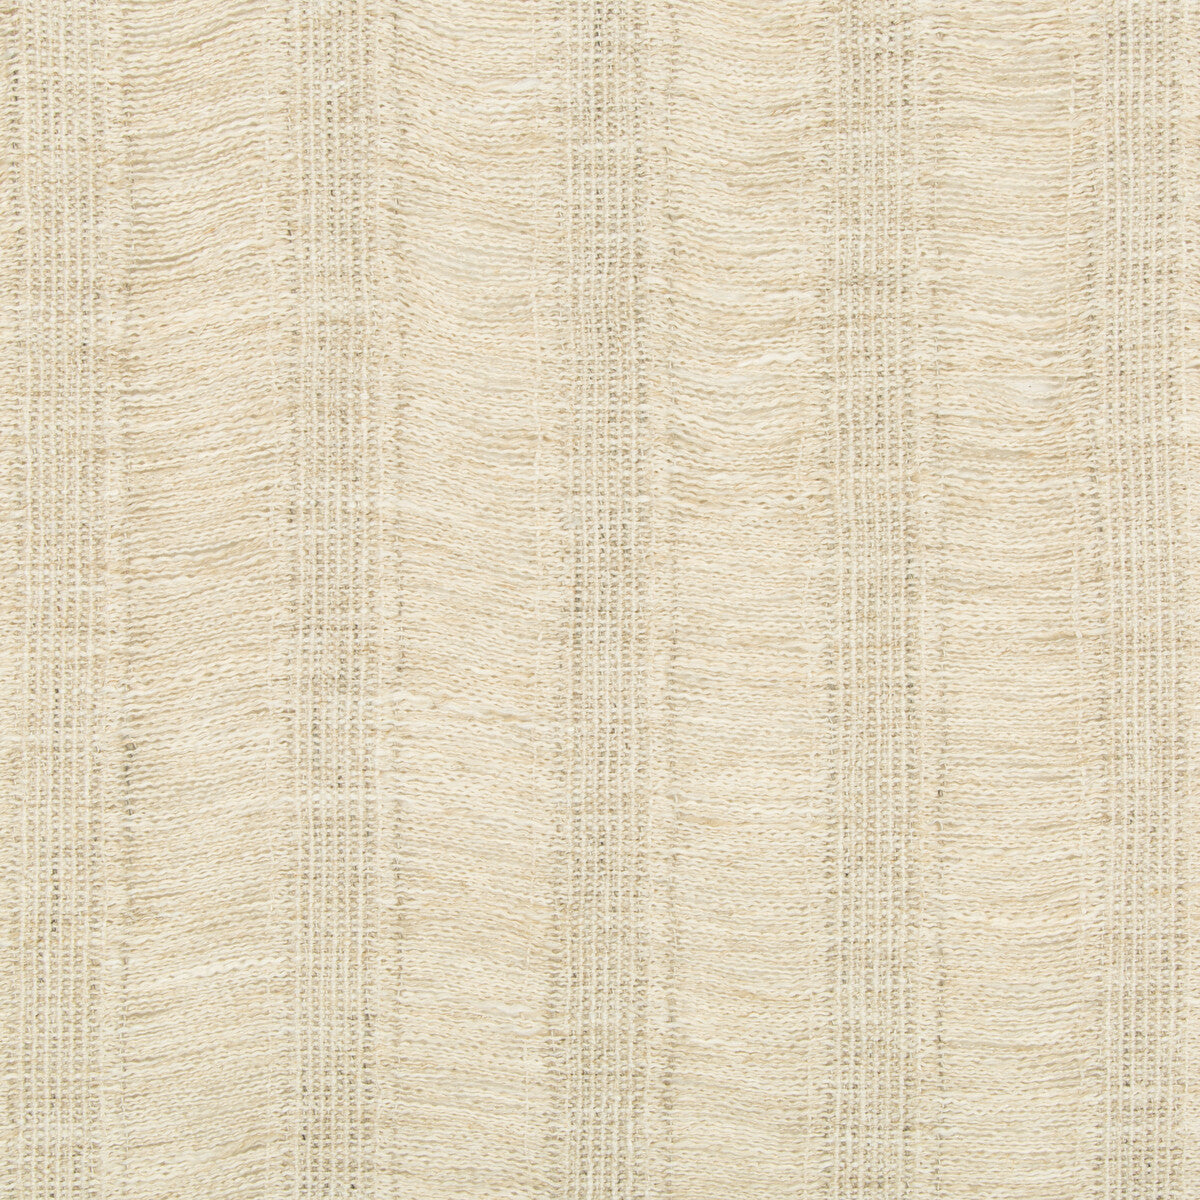 Fermata fabric in cornsilk color - pattern 4482.116.0 - by Kravet Couture in the Sue Firestone Malibu collection